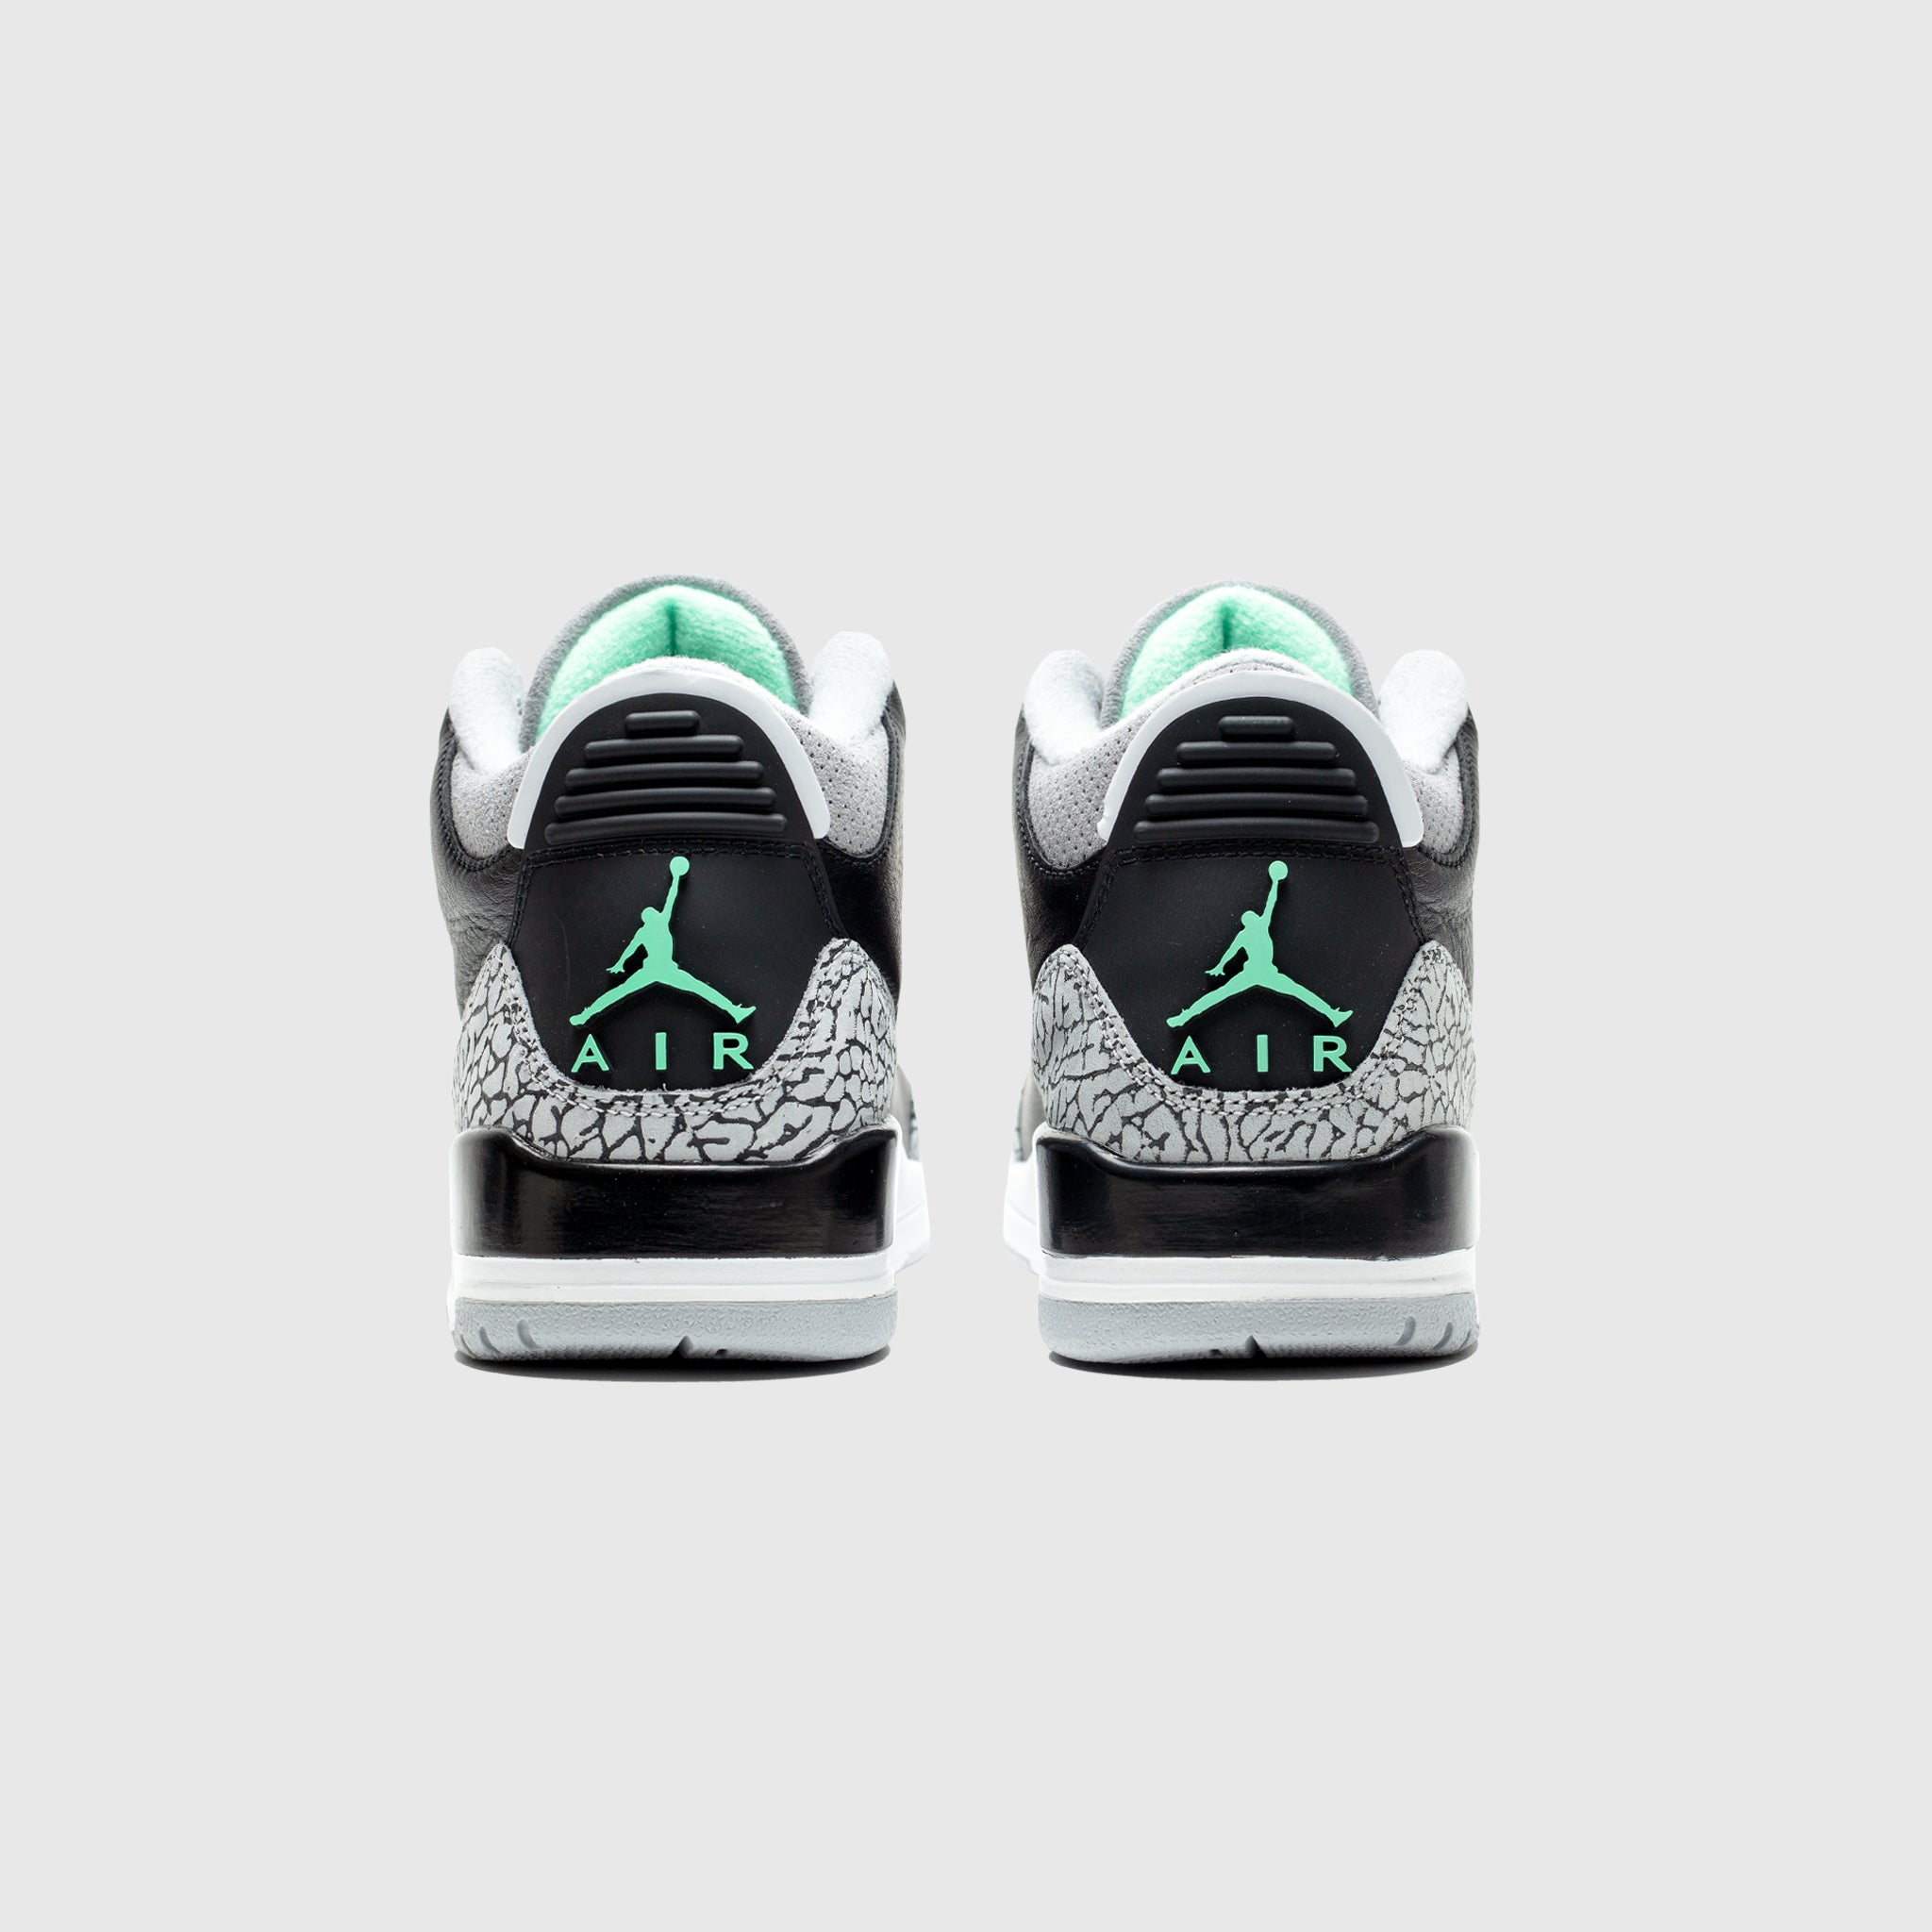 AIR Nike JORDAN 3 RETRO "BLACK/GREEN GLOW"